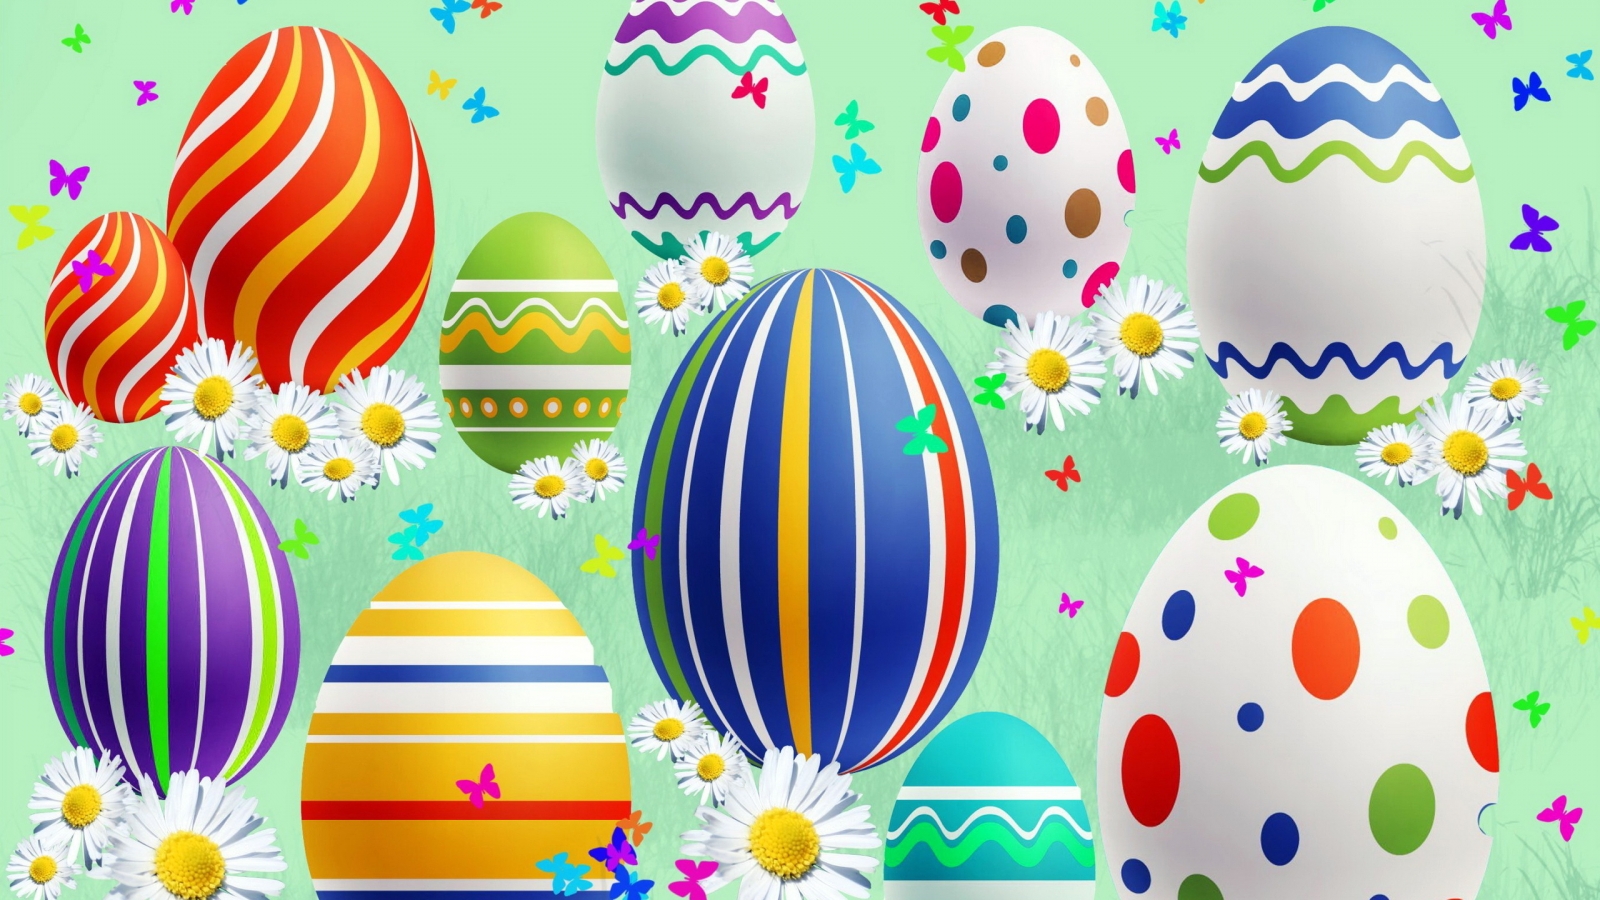 Lovely Easter Eggs for 1600 x 900 HDTV resolution